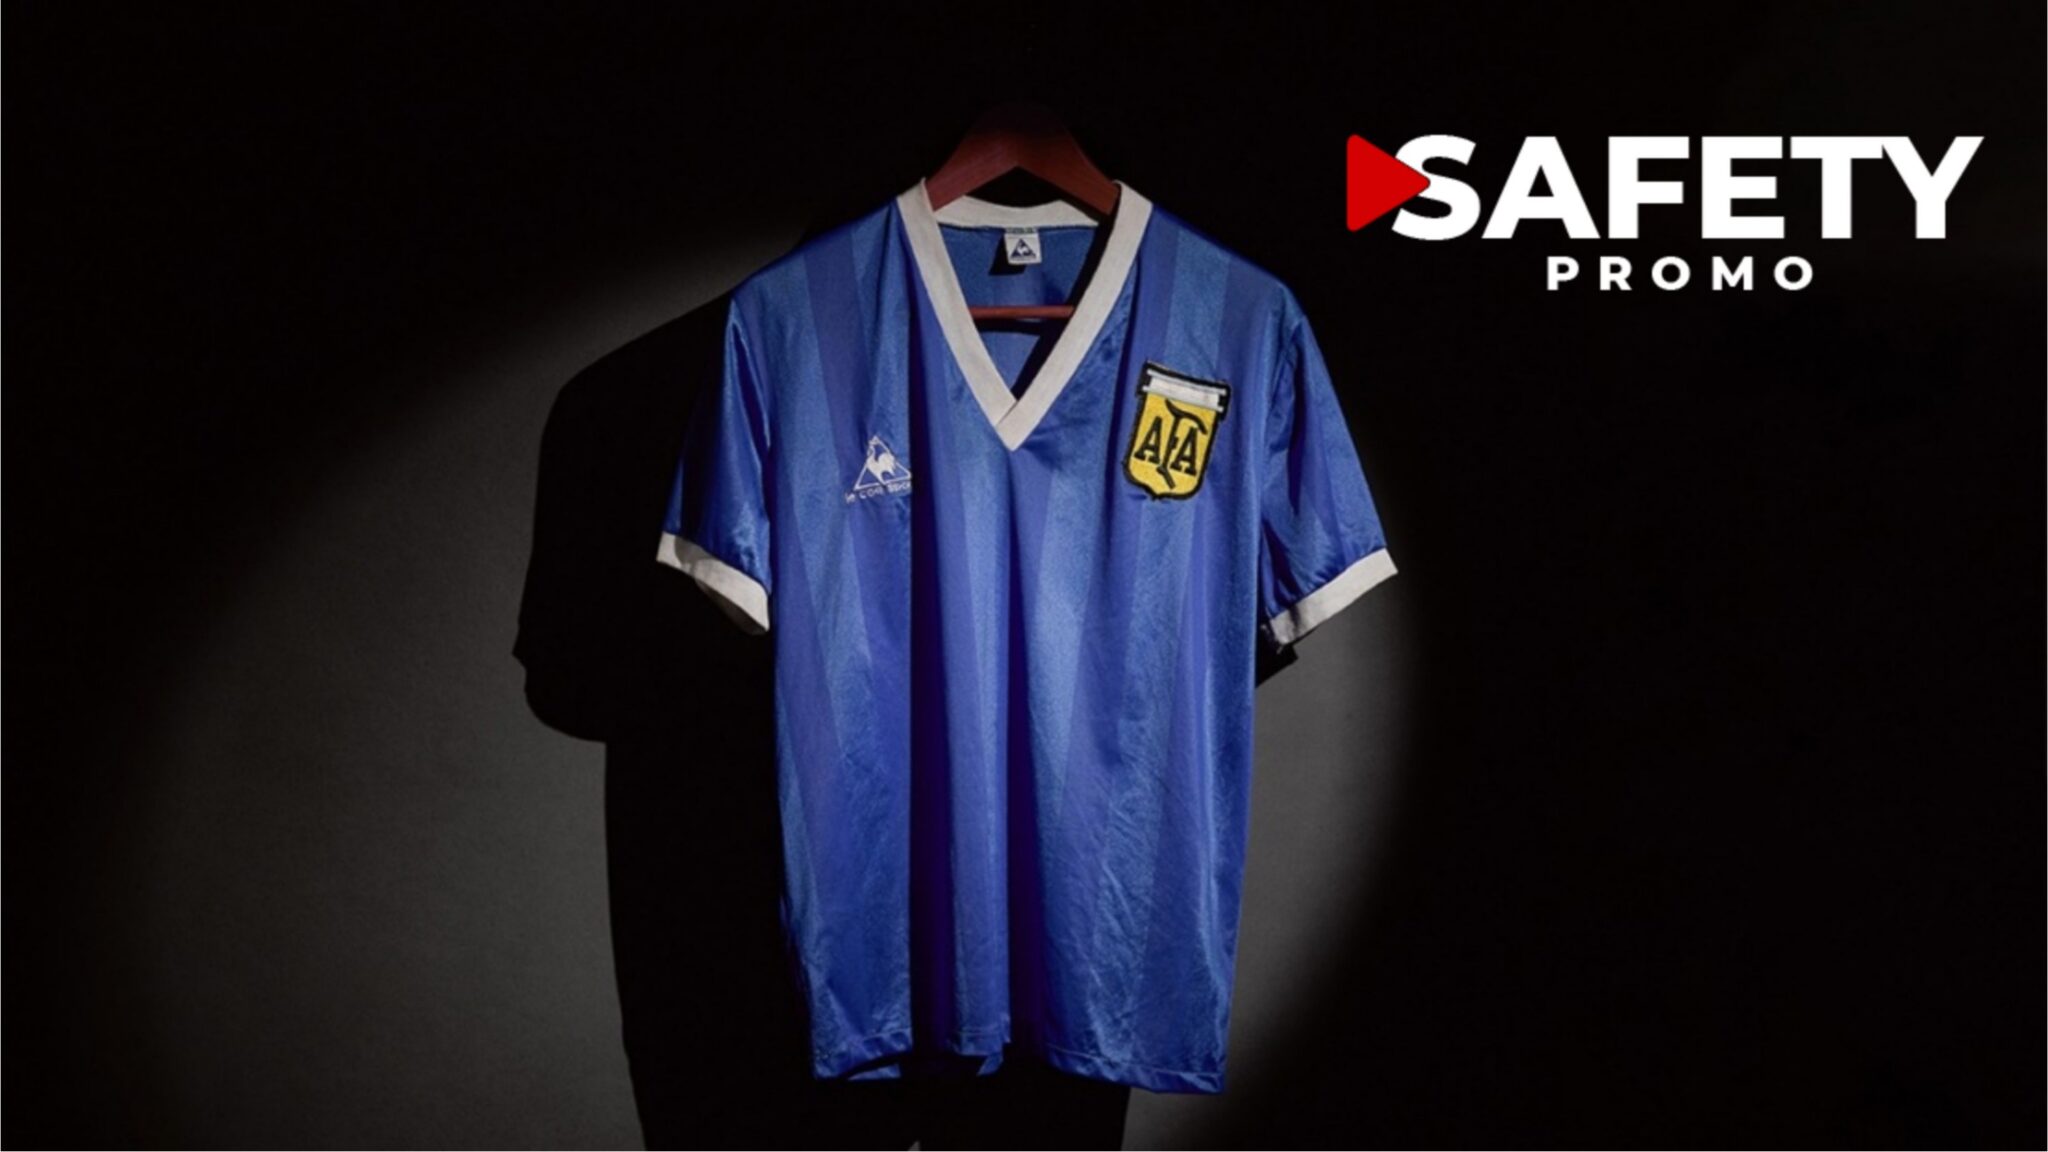 "La main de Dieu" : le maillot de Diego Maradona lors du Mundial 1986 vendu aux enchères